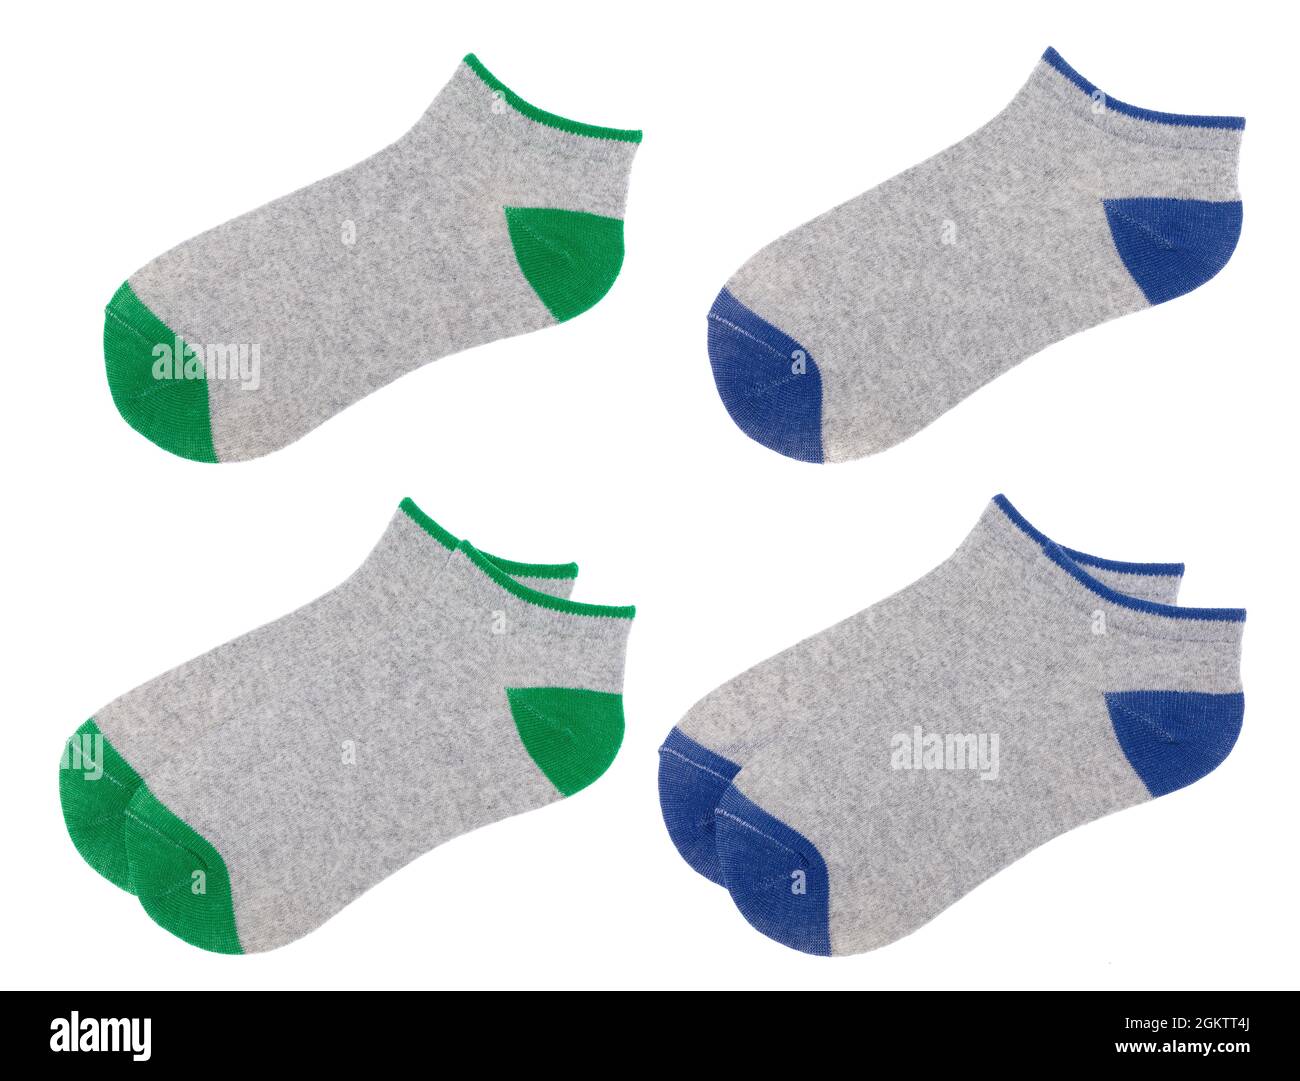 Chaussettes basses en coton mélangé gris-bleu et vert à coupe basse isolées sur fond blanc Banque D'Images